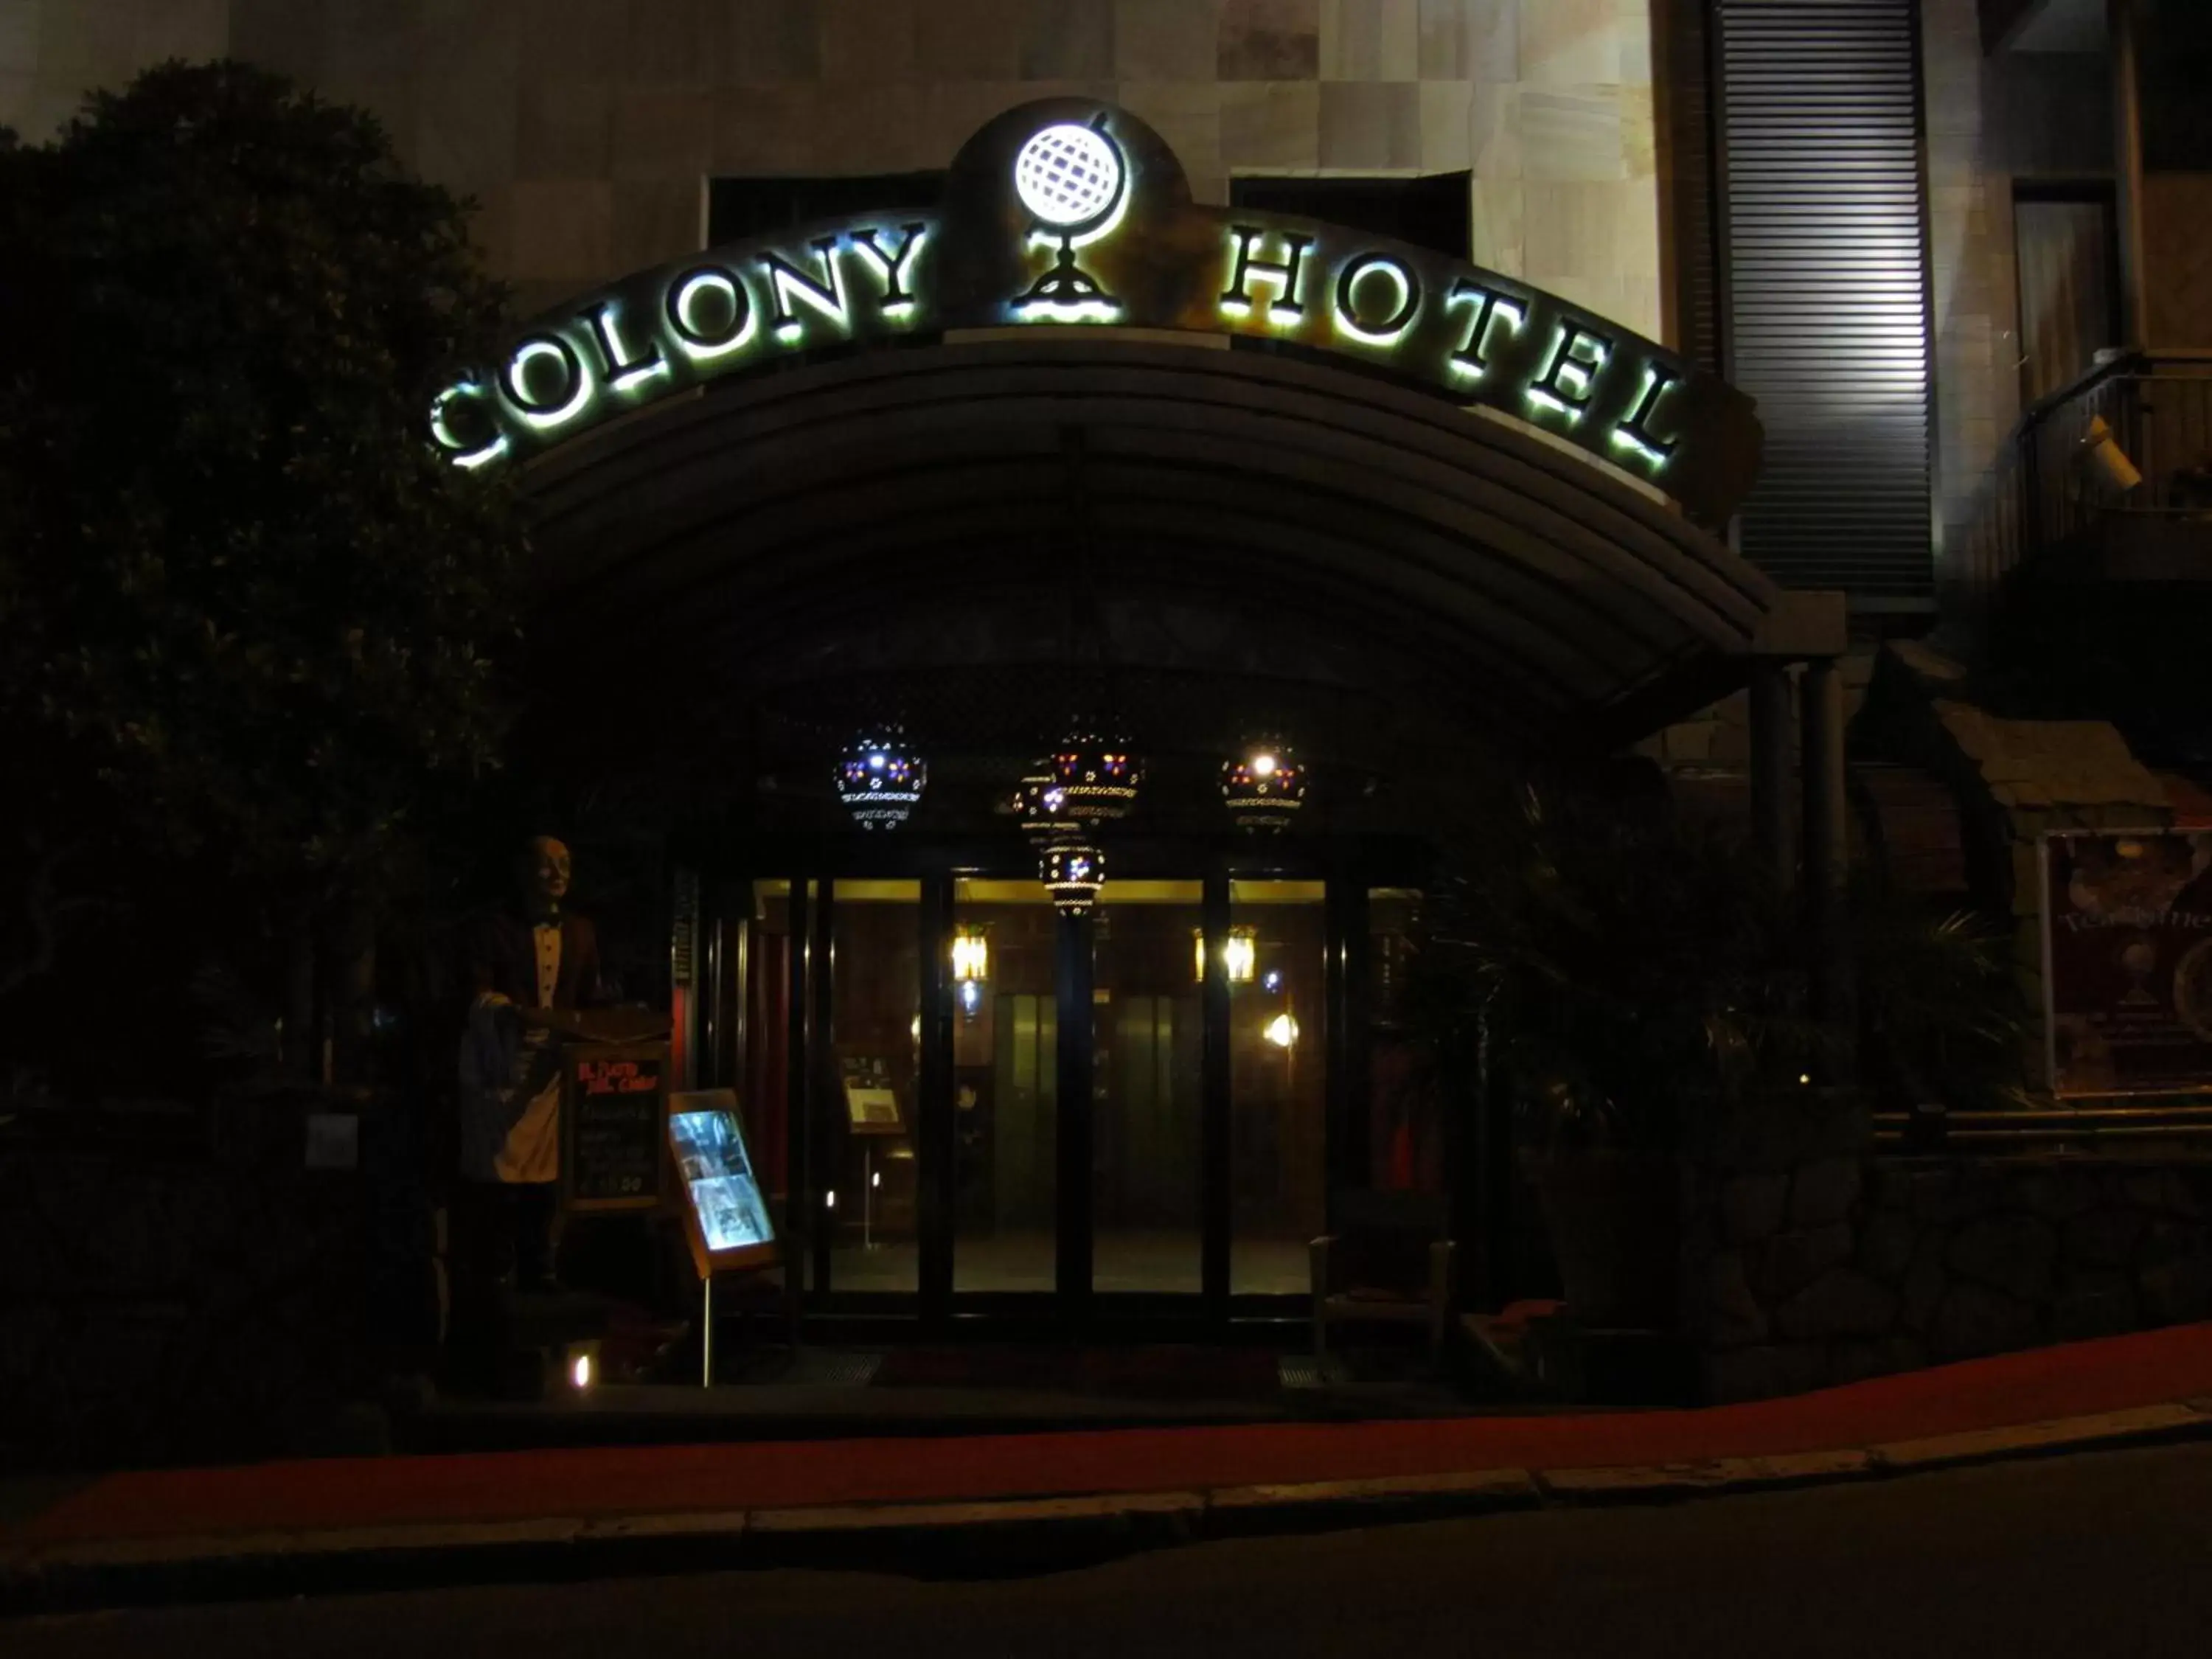 Grand Hotel Colony